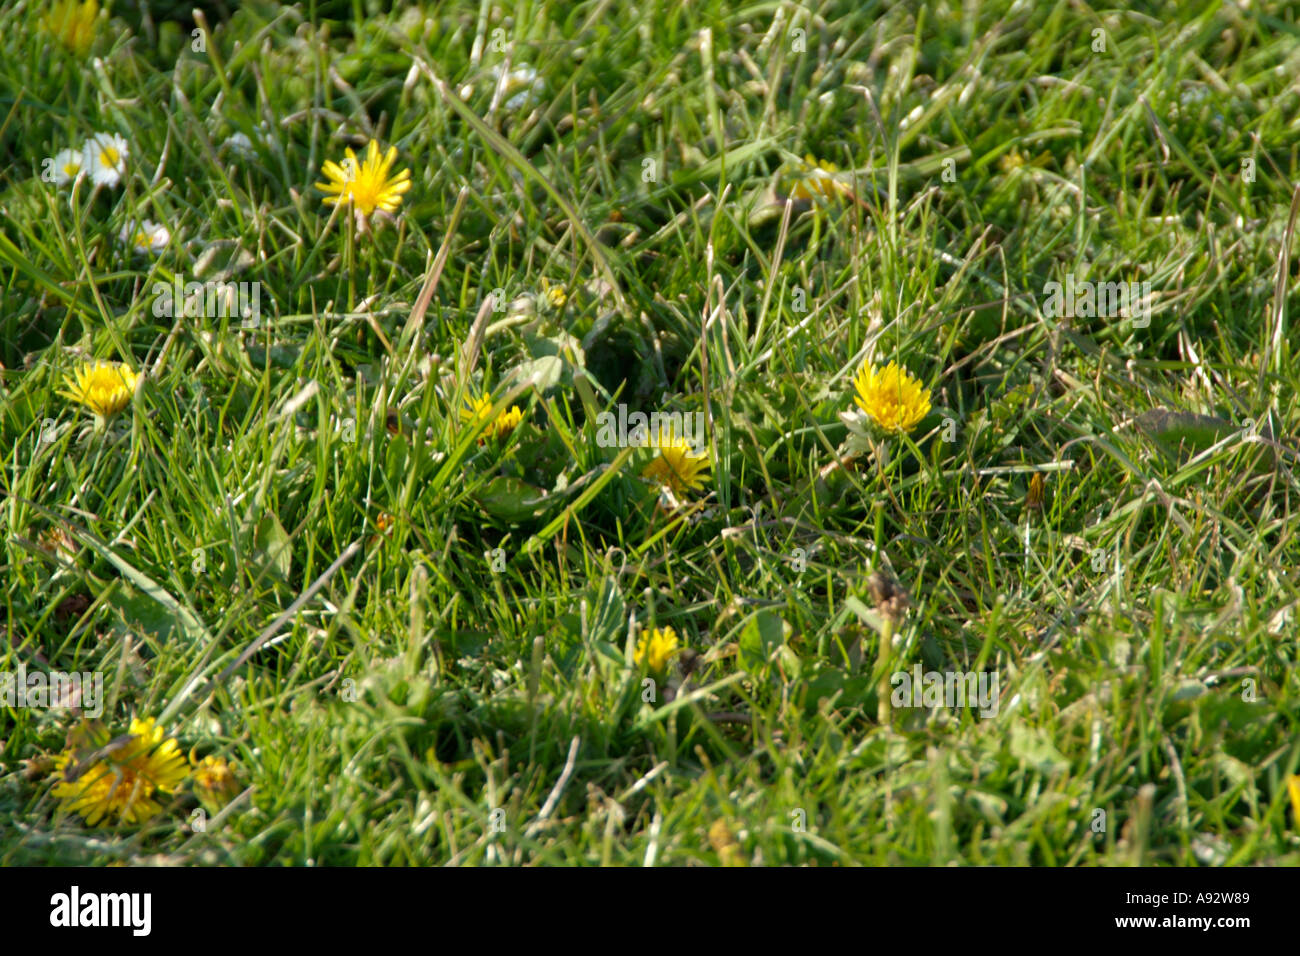 Löwenzahn Unkraut Unkraut Rasen Rasen Unkrautvernichter Park gelbe Blume  Pest geschnitten Stockfotografie - Alamy